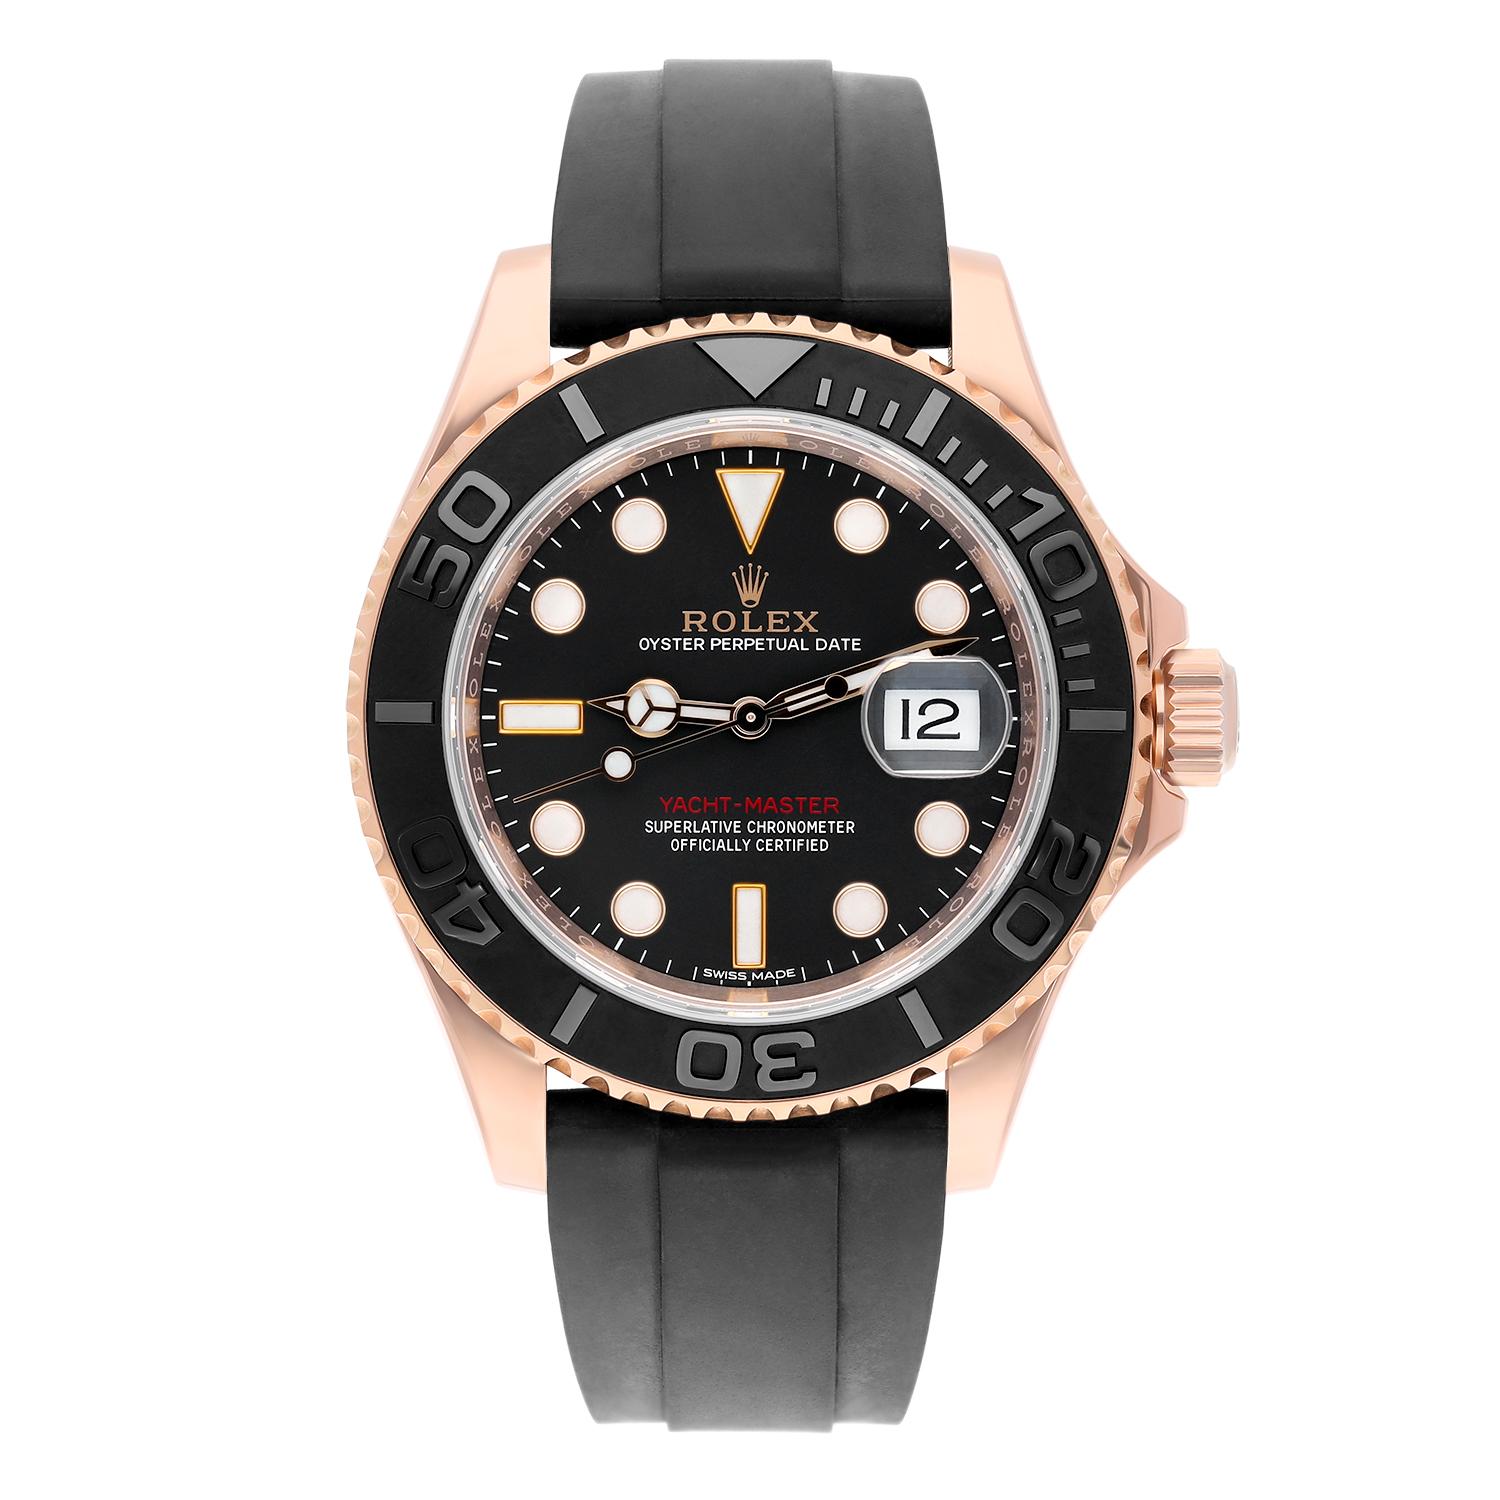 Cette montre-bracelet Rolex Yacht-Master est un garde-temps luxueux qui respire l'élégance et le style. Fabriquée en or rose 18 carats, elle présente une finition de boîtier polie et une lunette tournante bidirectionnelle qui complète parfaitement